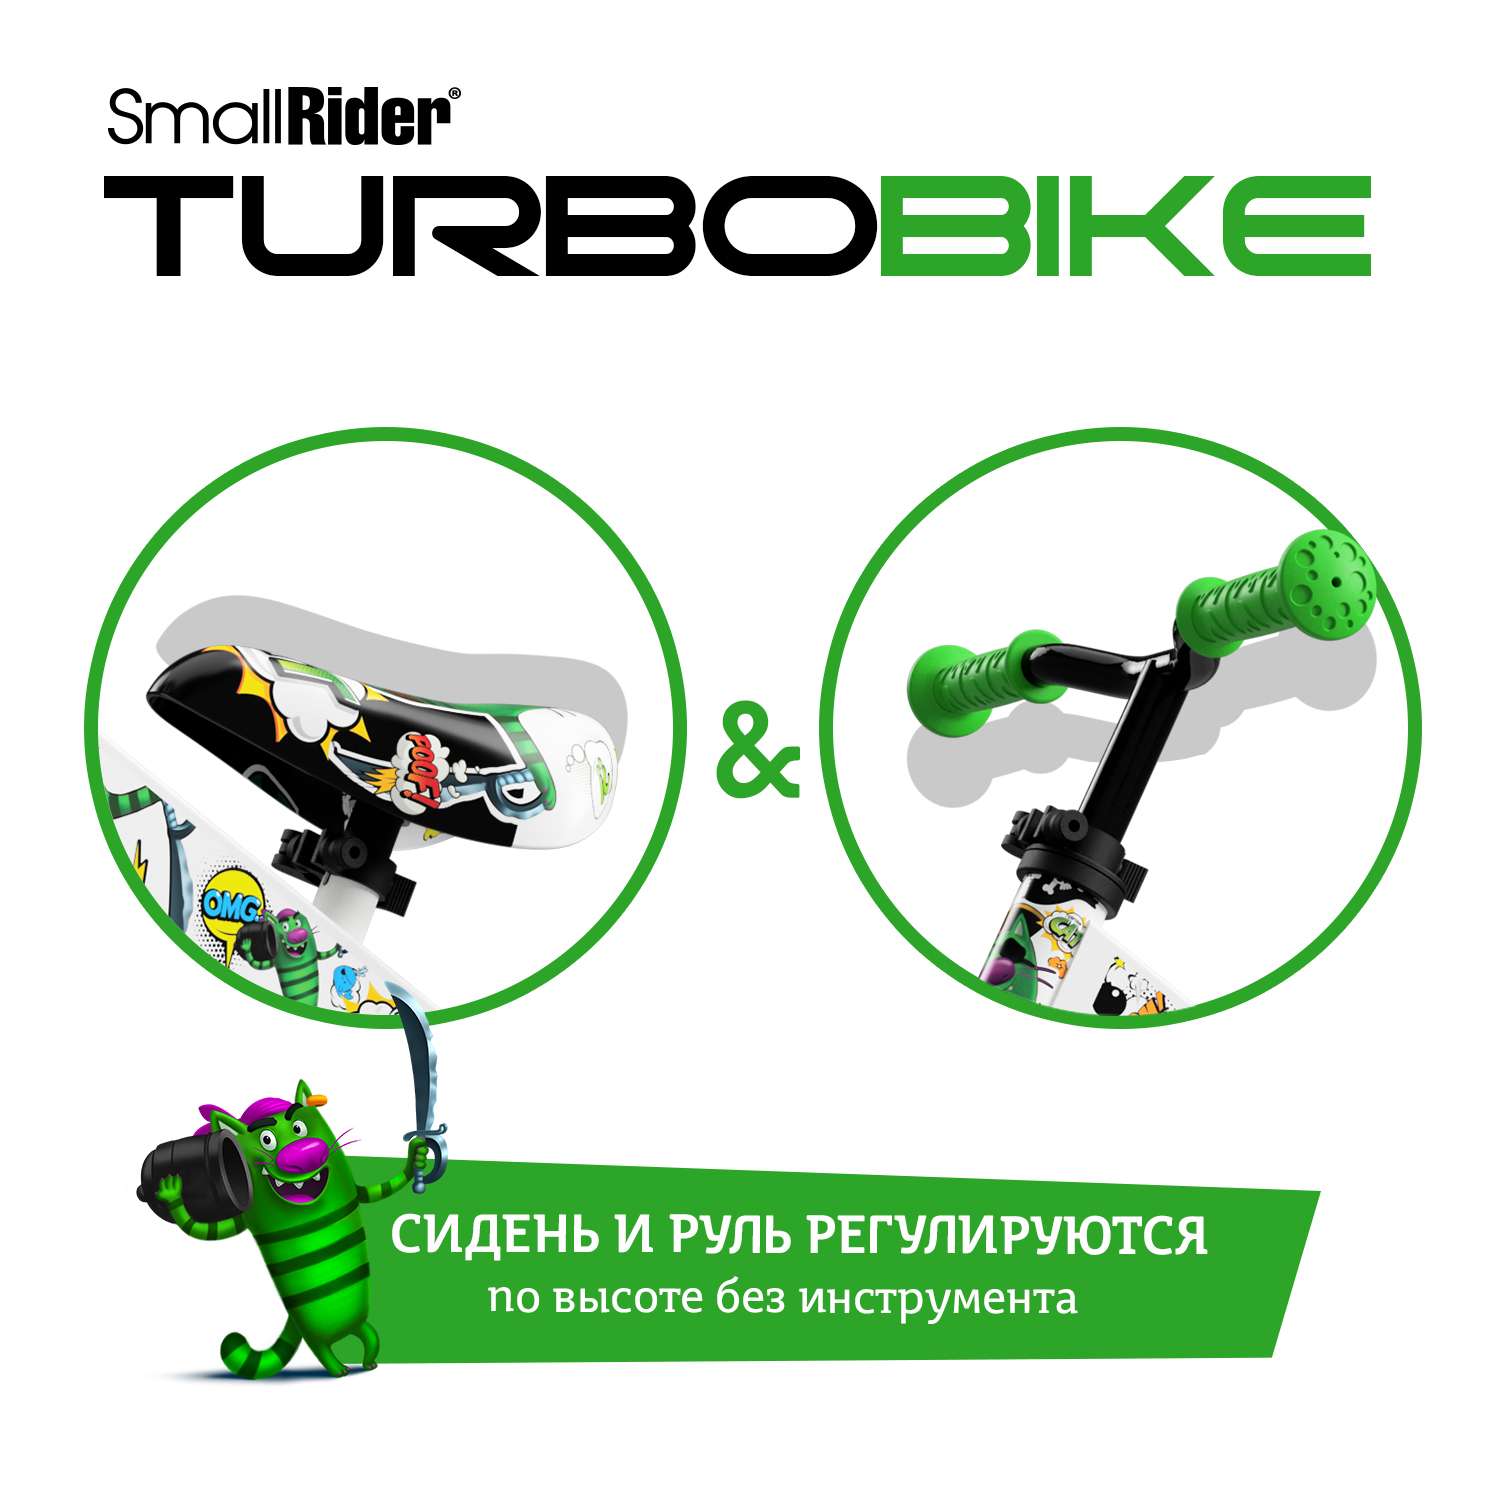 Беговел Small Rider для малышей Turbo Bike зеленый - фото 5